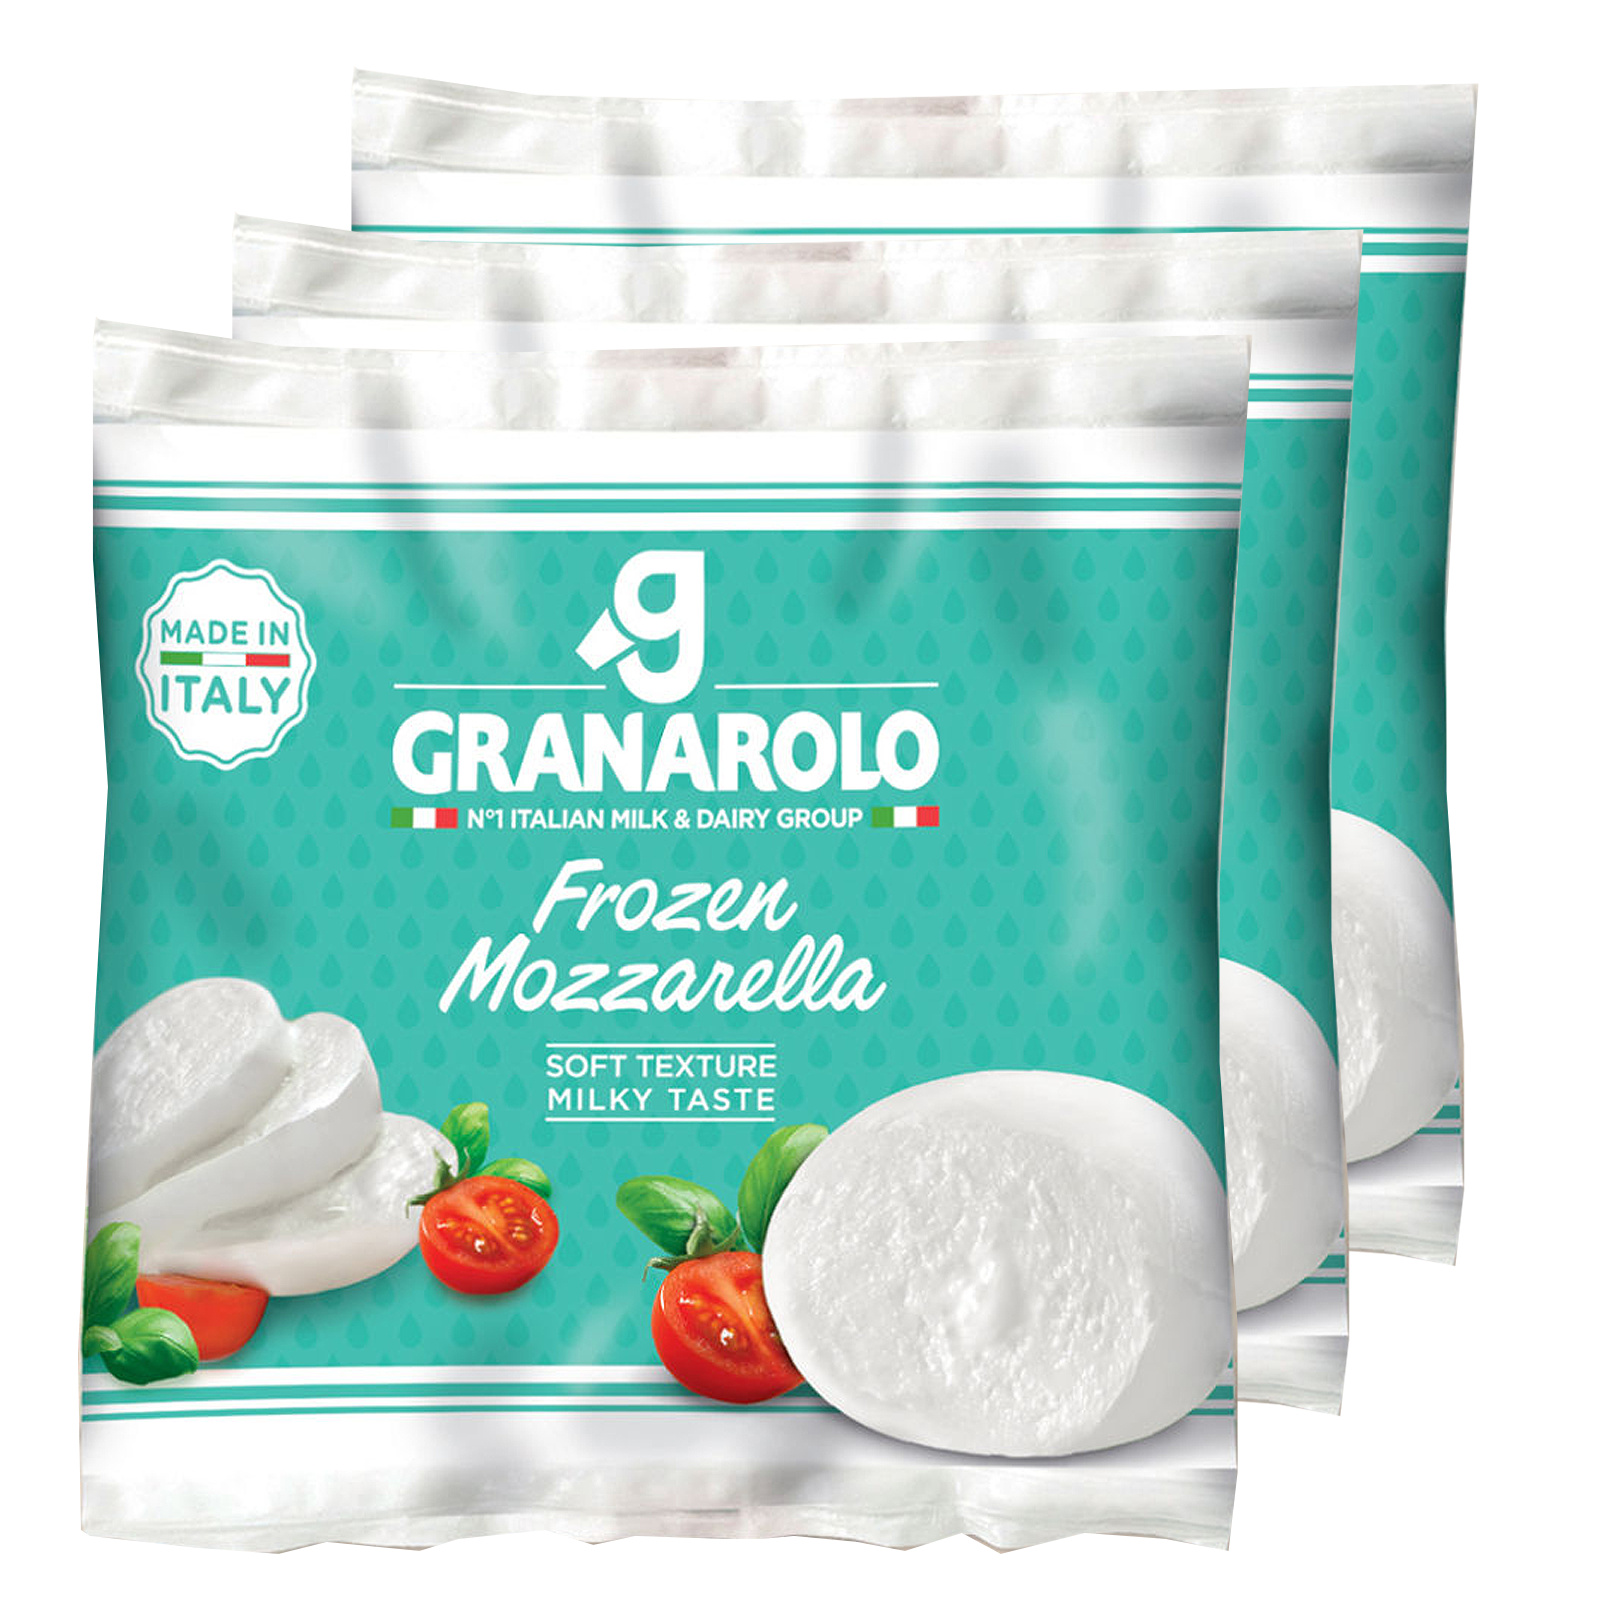 All-Natural Frozen Mozzarella from Italy (300g) - Horizon Farms